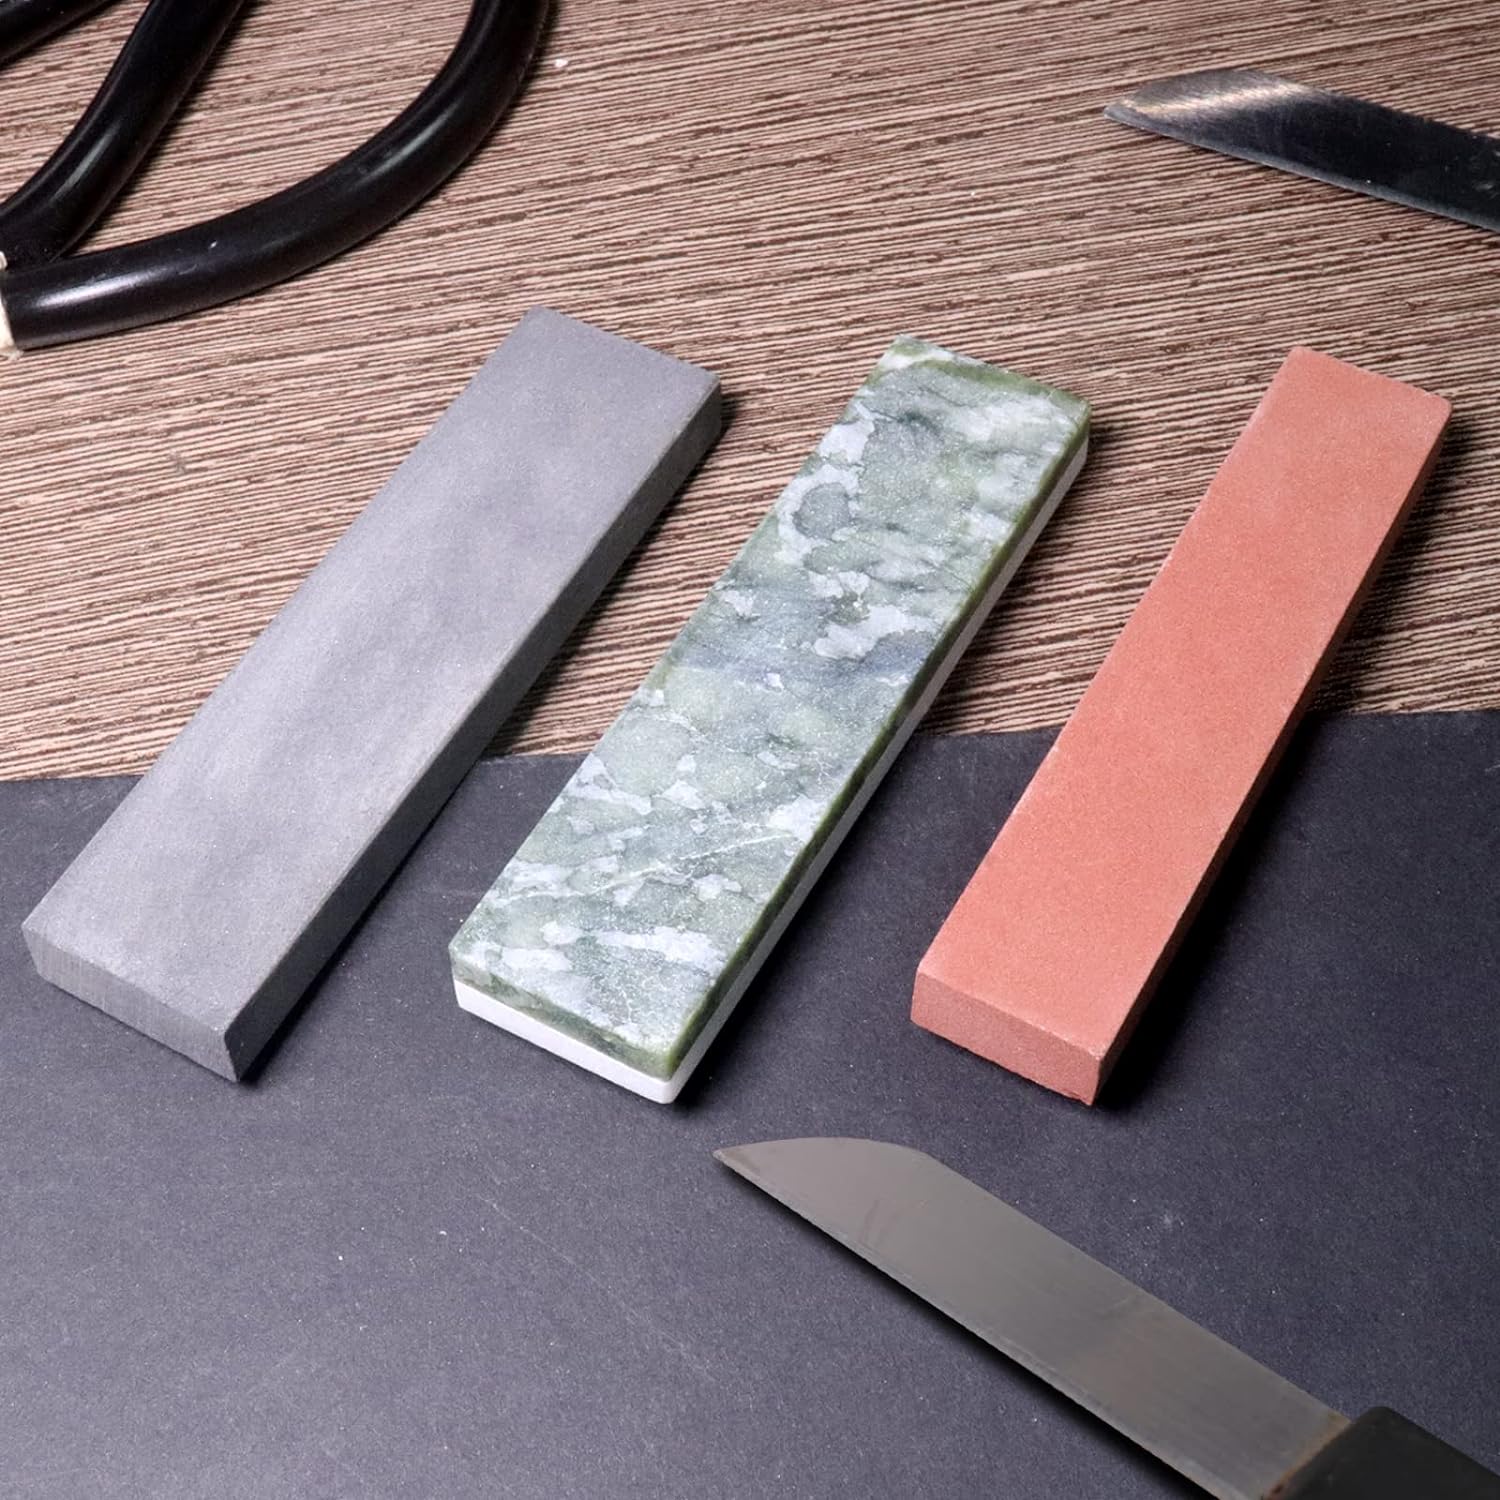 CBRIGHT Sharpening Stone Set - 3pcs Knife Sharpener Grinding and Polishing Pocket Size Whetstone Set Polishing Assorted Size Oil Stone (8000#-10000#,800#,320#)